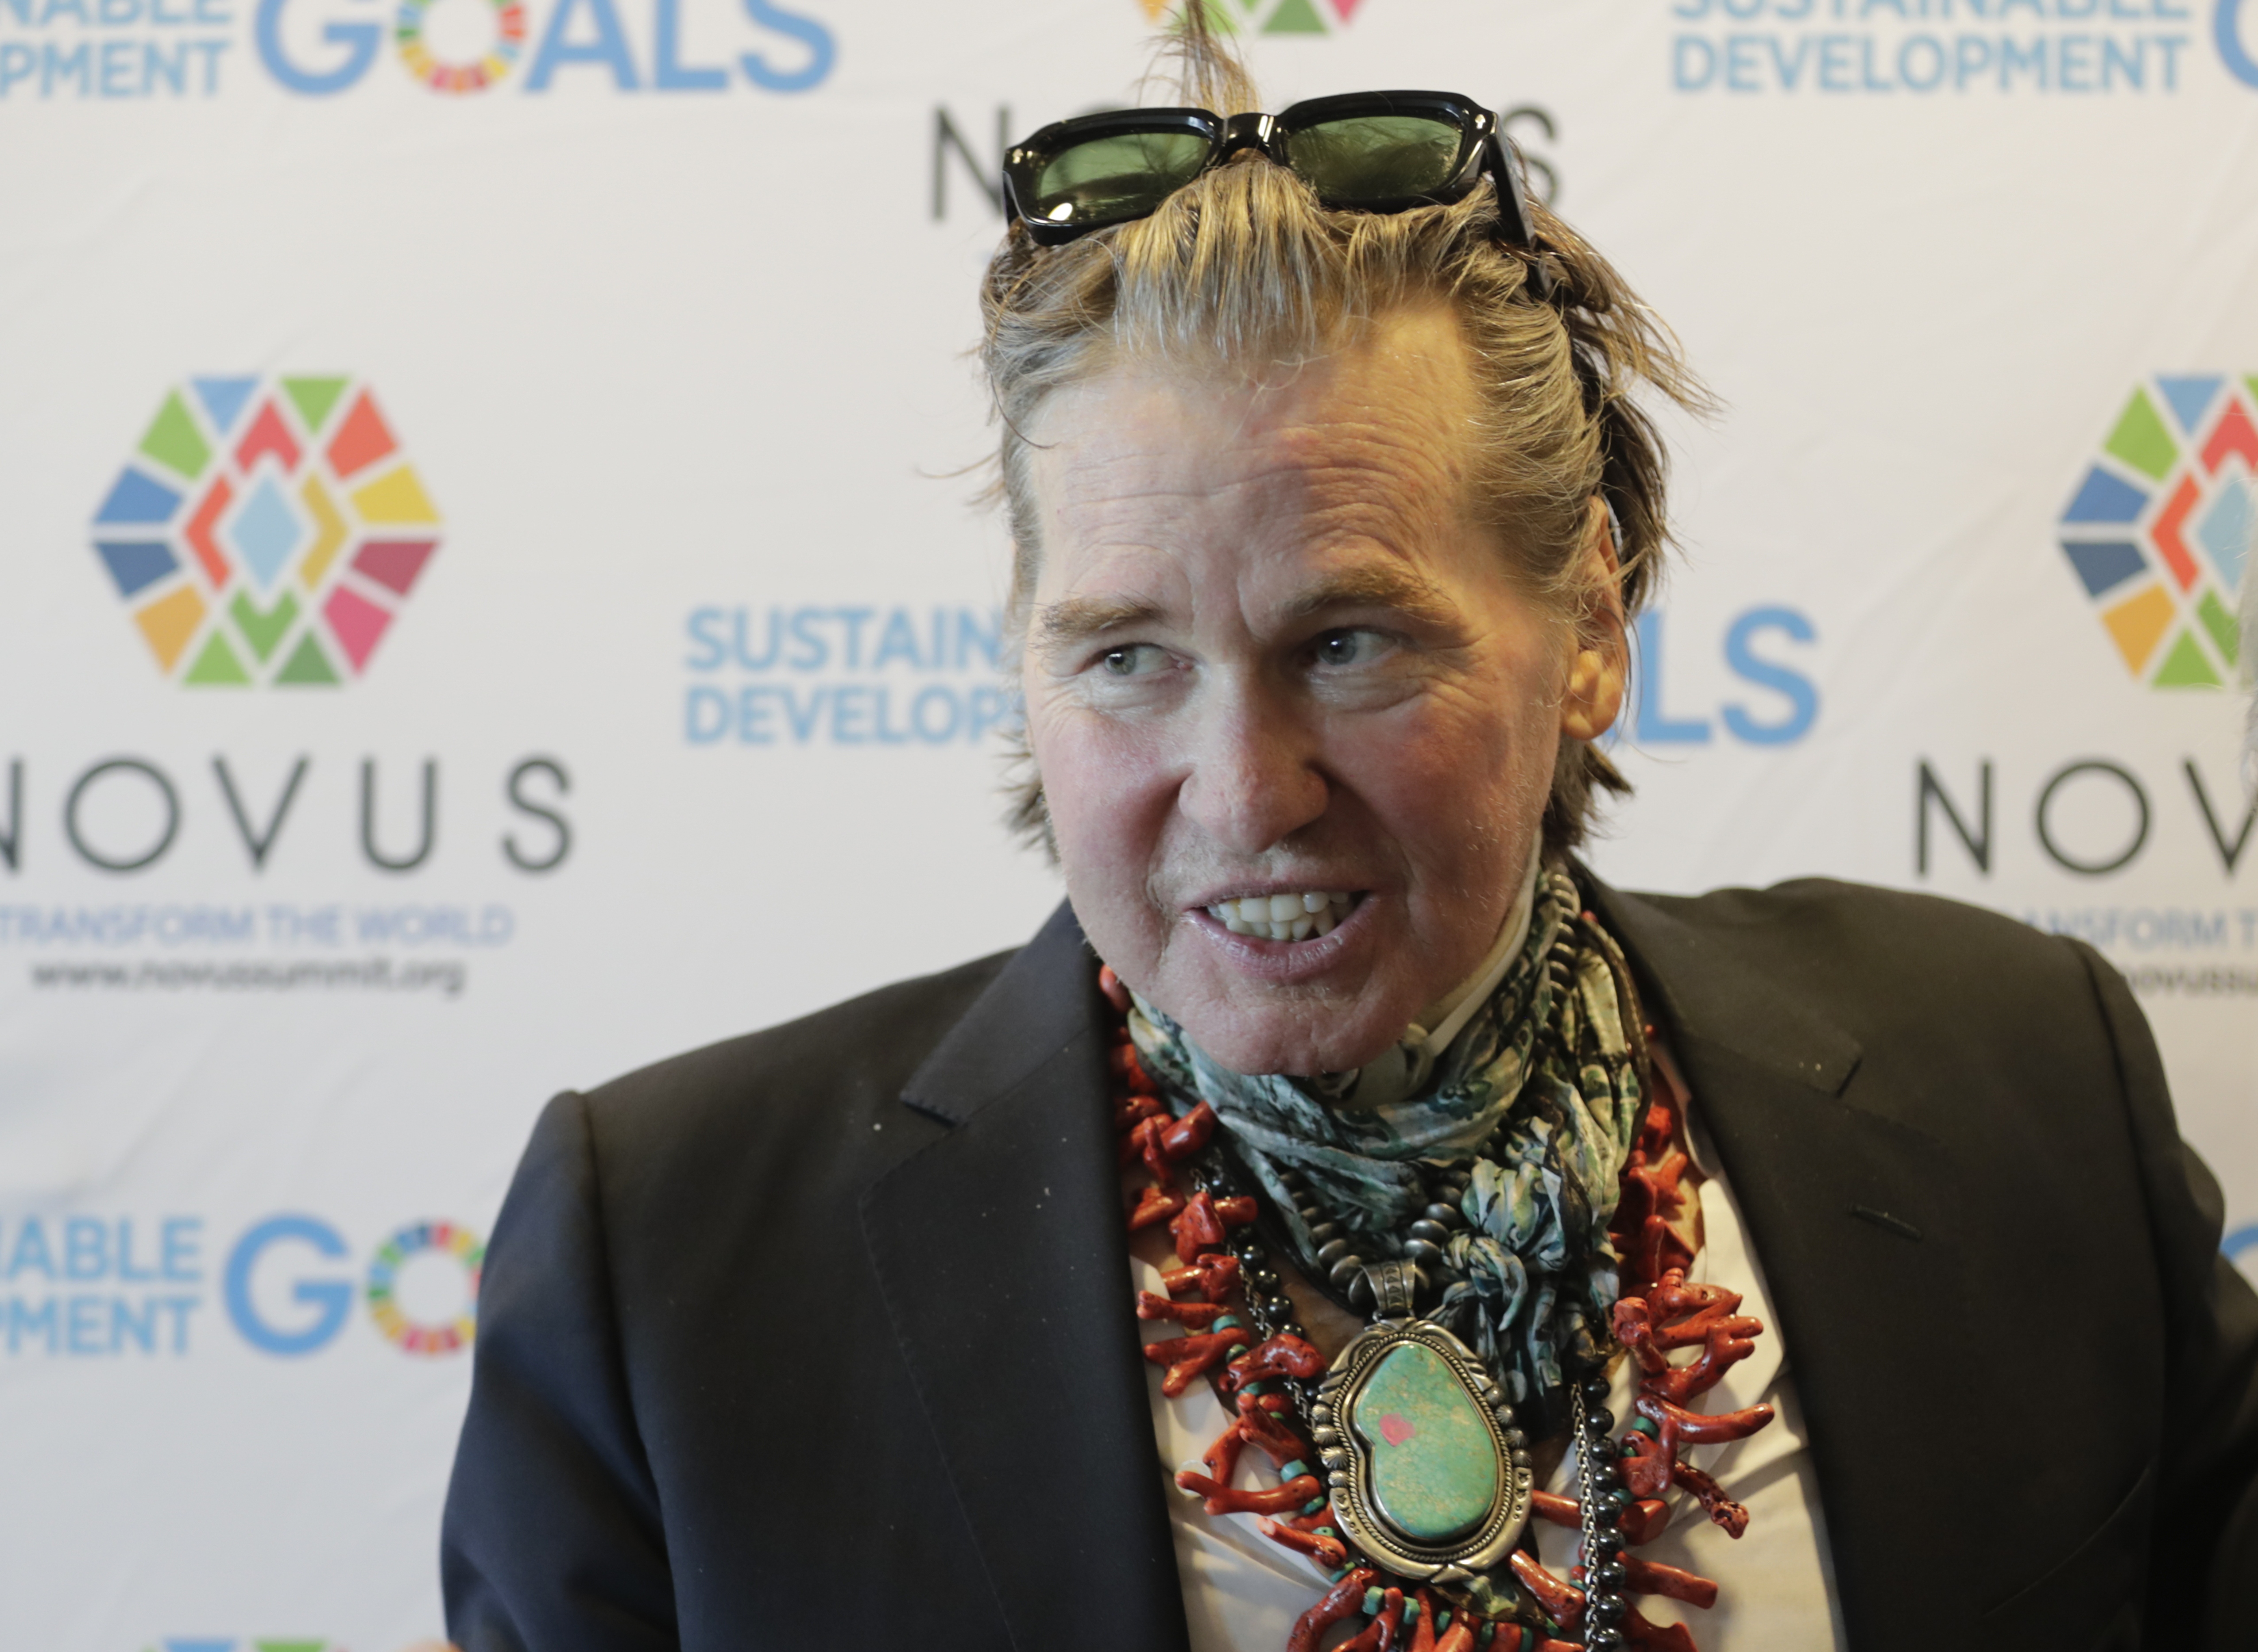 Val Kilmer au siège des Nations unies à New York pour promouvoir l'initiative des 17 Objectifs de développement durable (ODD), le 20 juillet 2019 | Source : Getty Images